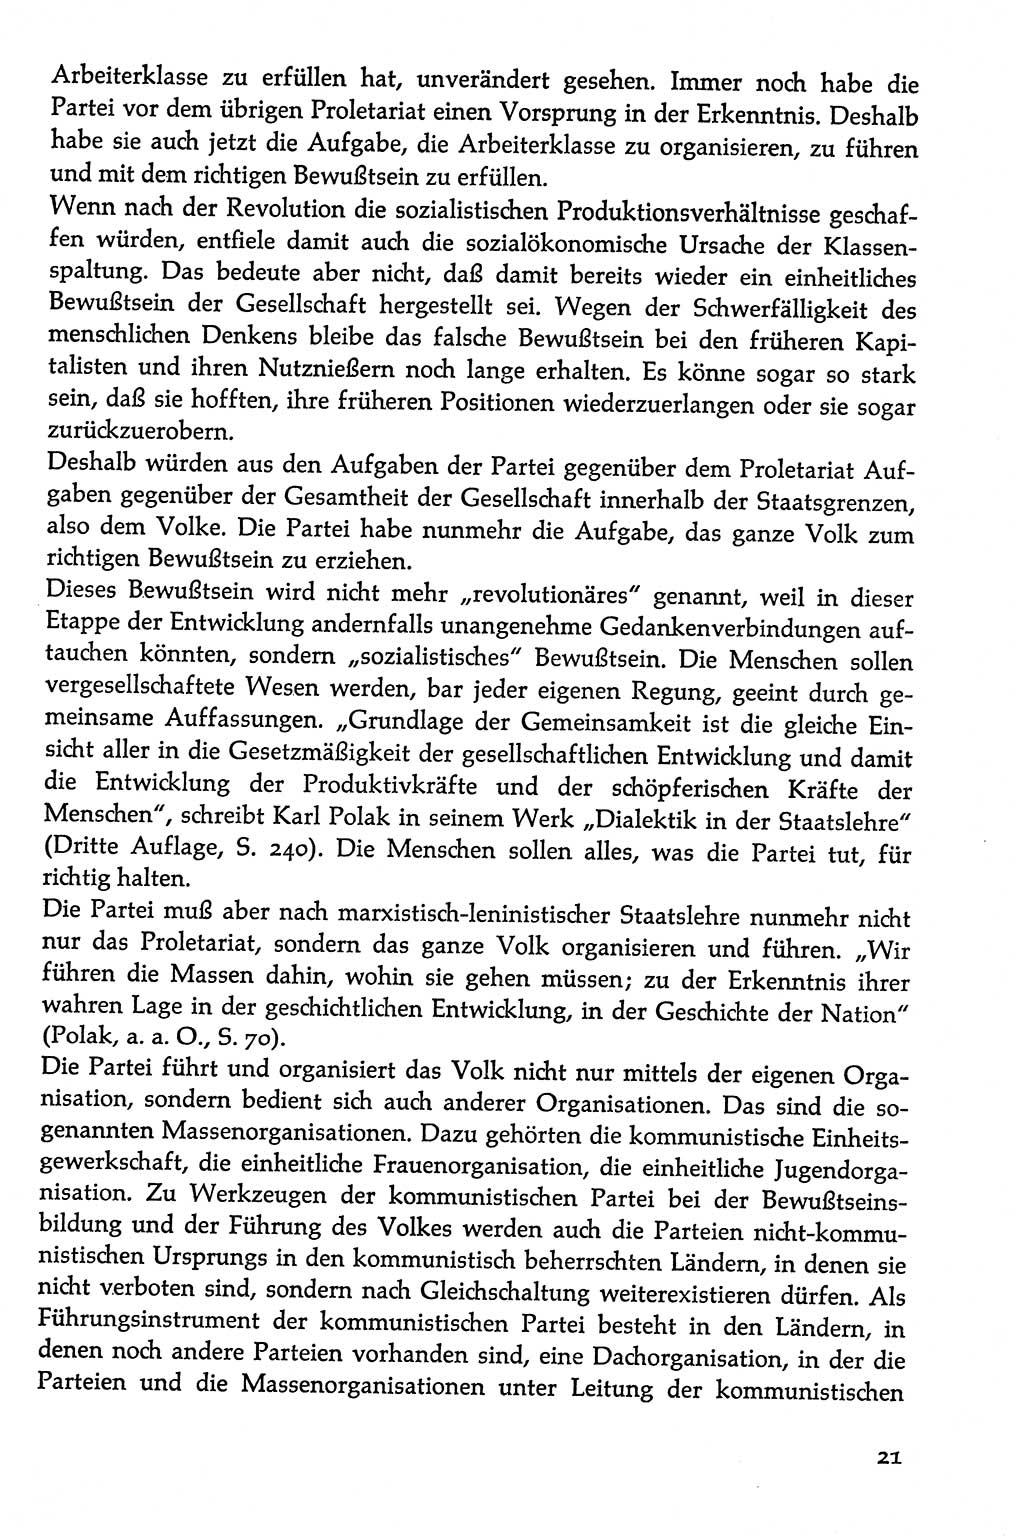 Volksdemokratische Ordnung in Mitteldeutschland [Deutsche Demokratische Republik (DDR)], Texte zur verfassungsrechtlichen Situation 1963, Seite 21 (Volksdem. Ordn. Md. DDR 1963, S. 21)